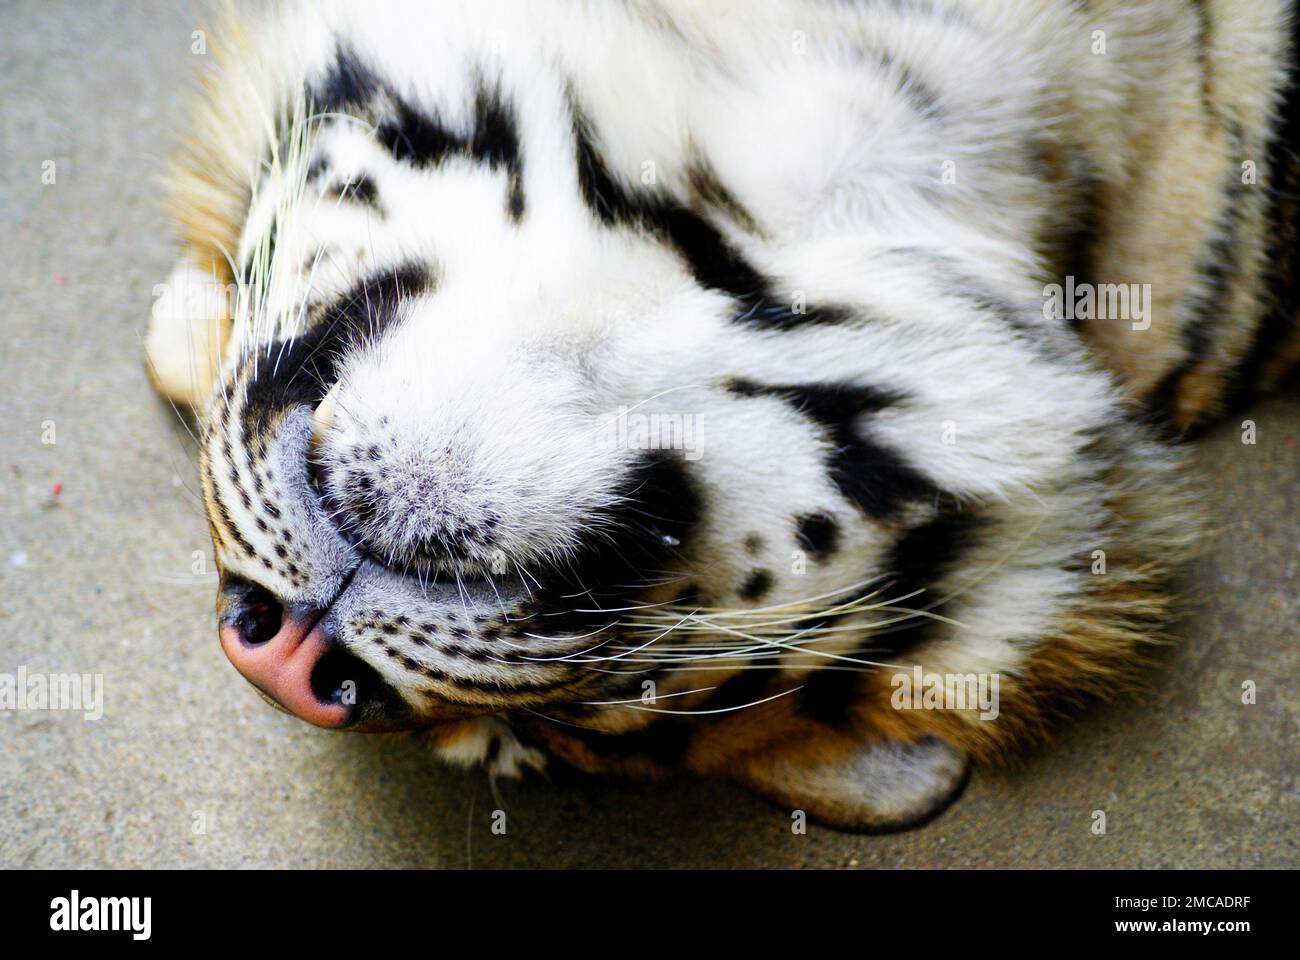 Un tigre sauvage - mignon animal dangereux avec une fourrure moelleuse dépouillée. Banque D'Images